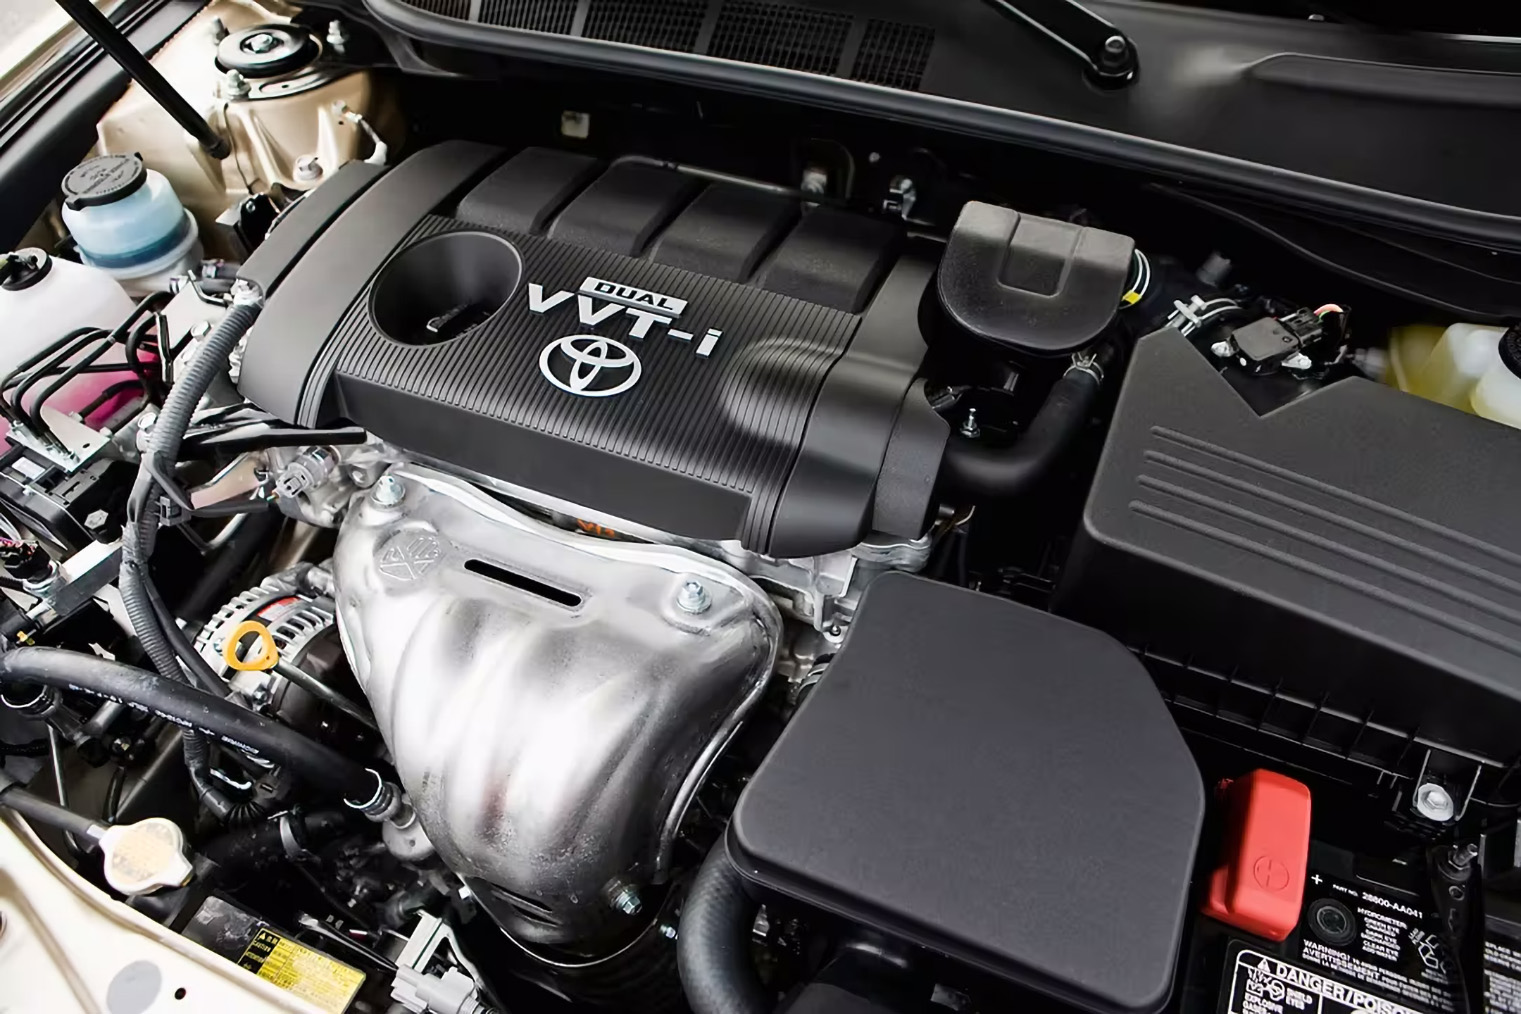 Двигатель Toyota 2.4 2AZ-FE: проблемы и особенности.